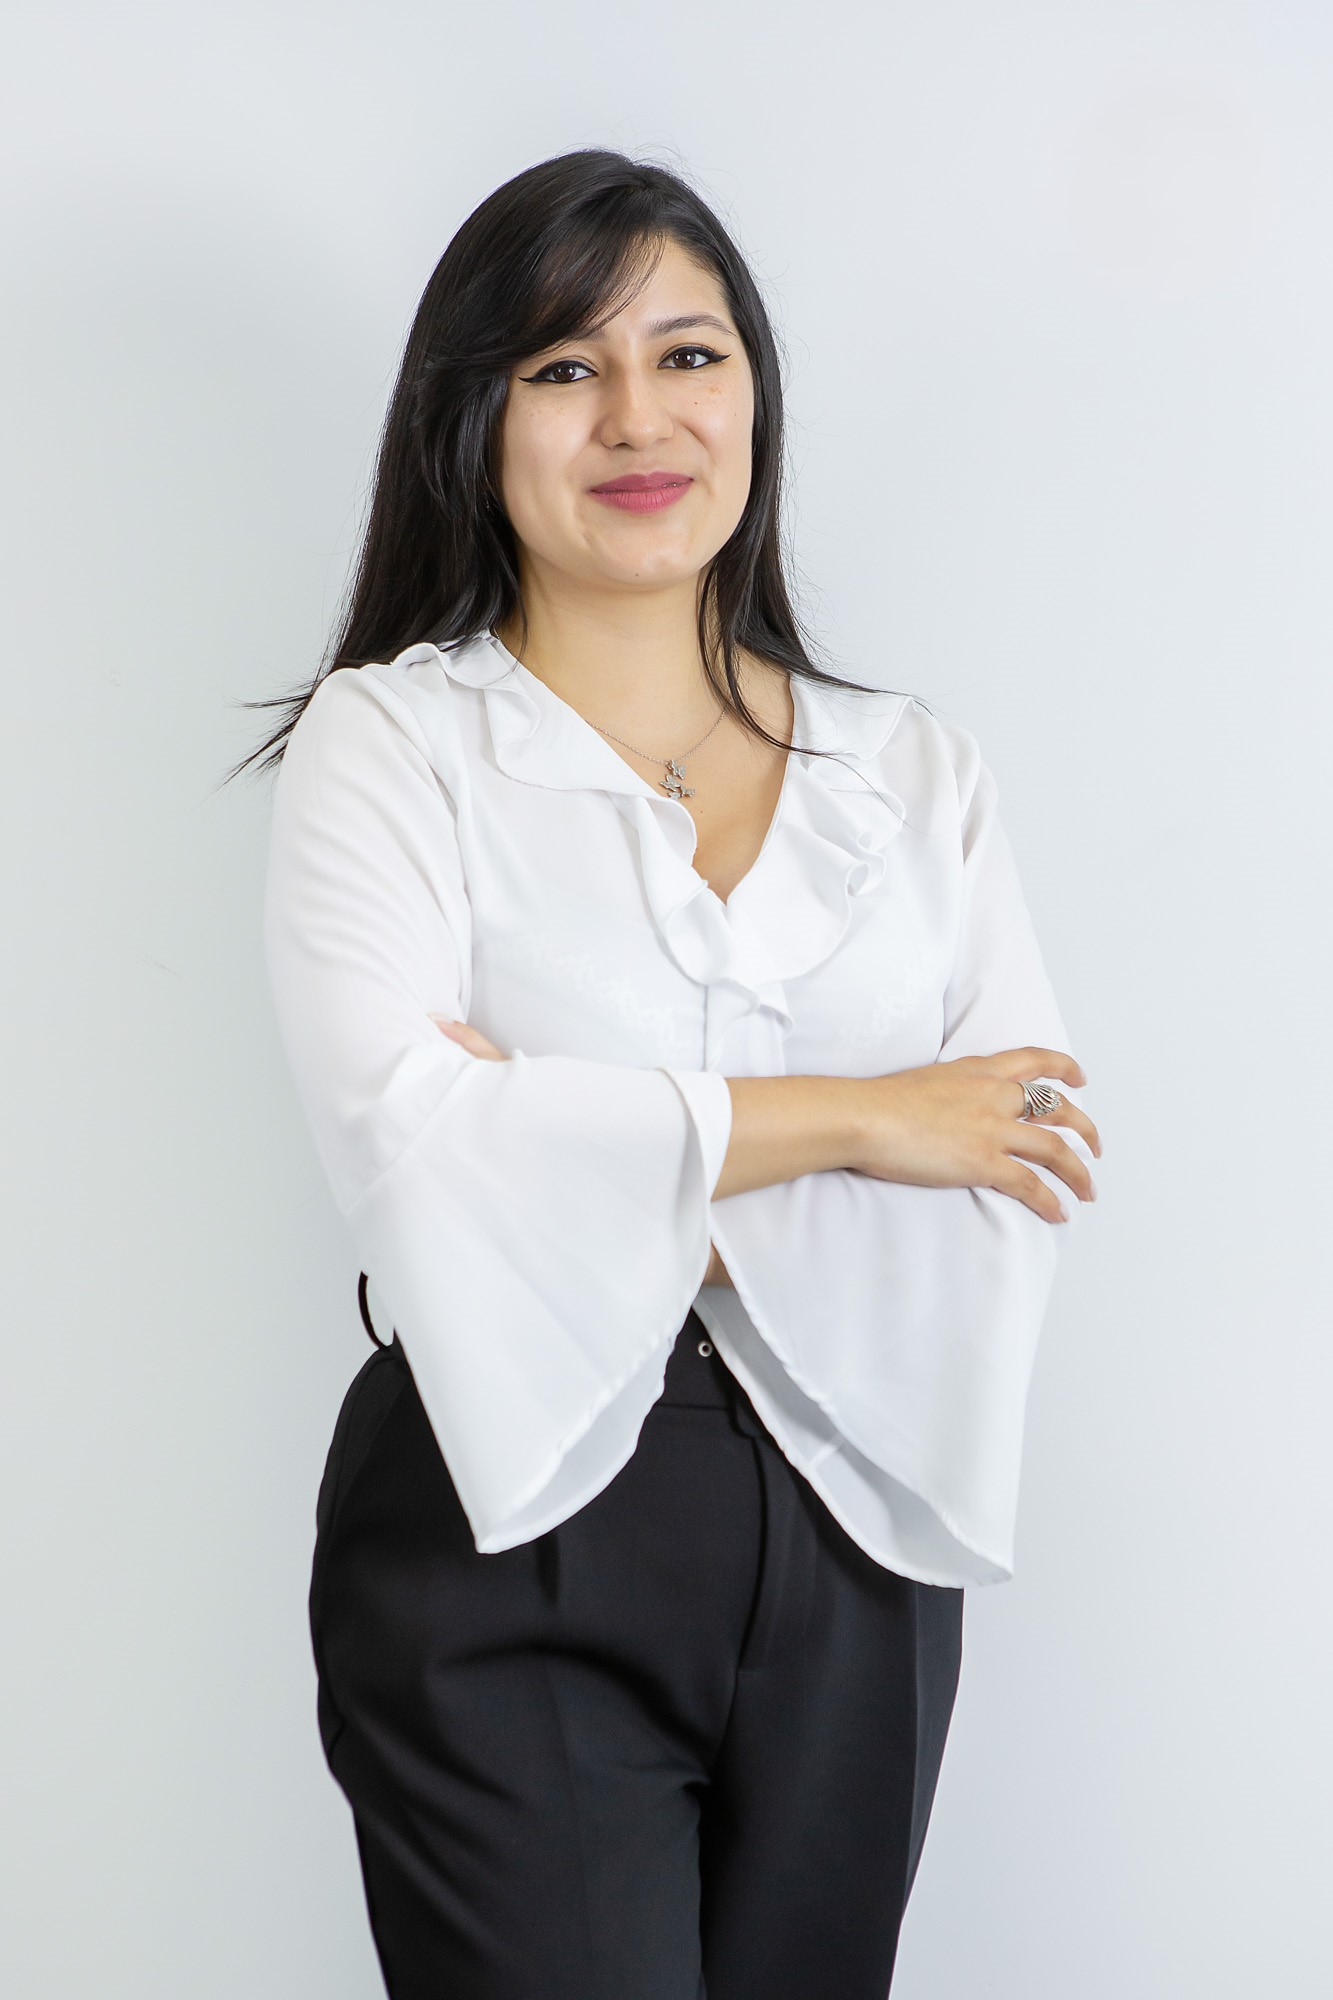 Dayanara González - Alumni VIU del Máster Oficial en Intervención Interdisciplinar en Violencia de Género + Diploma en Agente de Igualdad